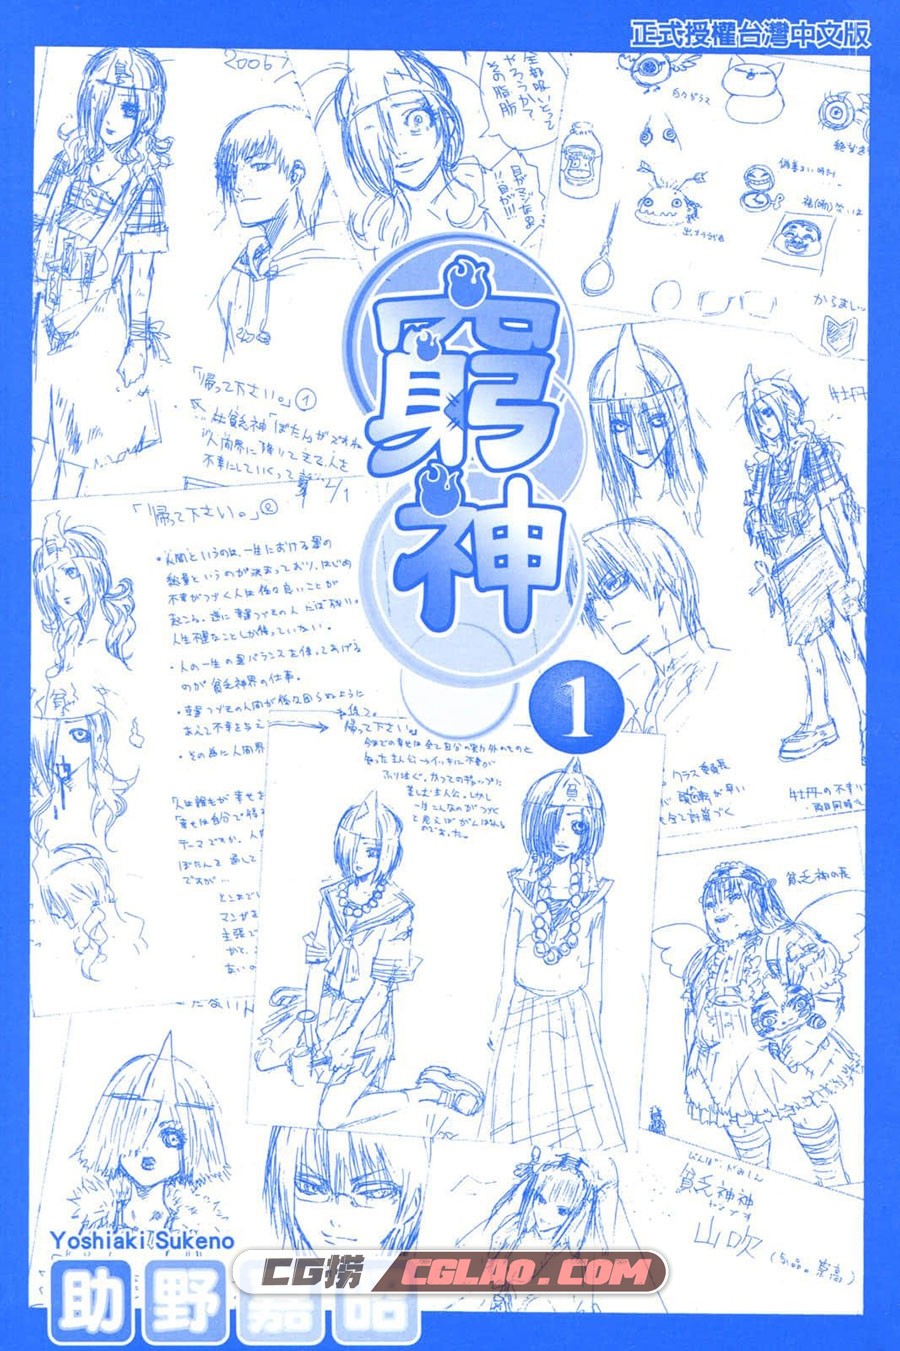 贫乏神来了 助野嘉昭 1-16卷 漫画全集下载 百度网盘,002.jpg